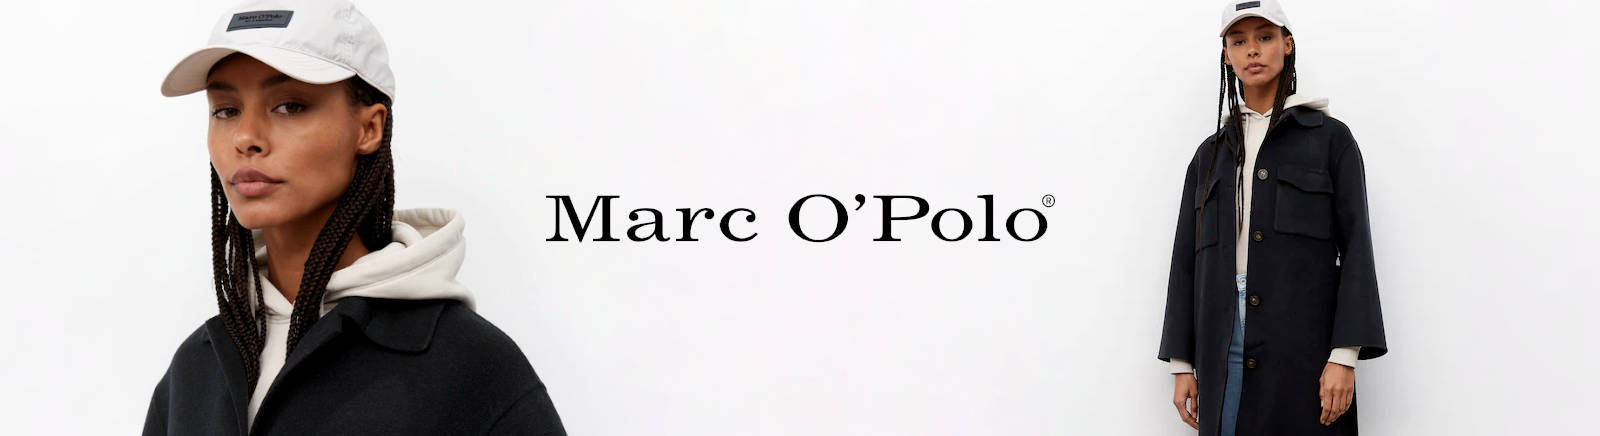 Marc O'Polo Damenschuhe online kaufen im Shop von GISY